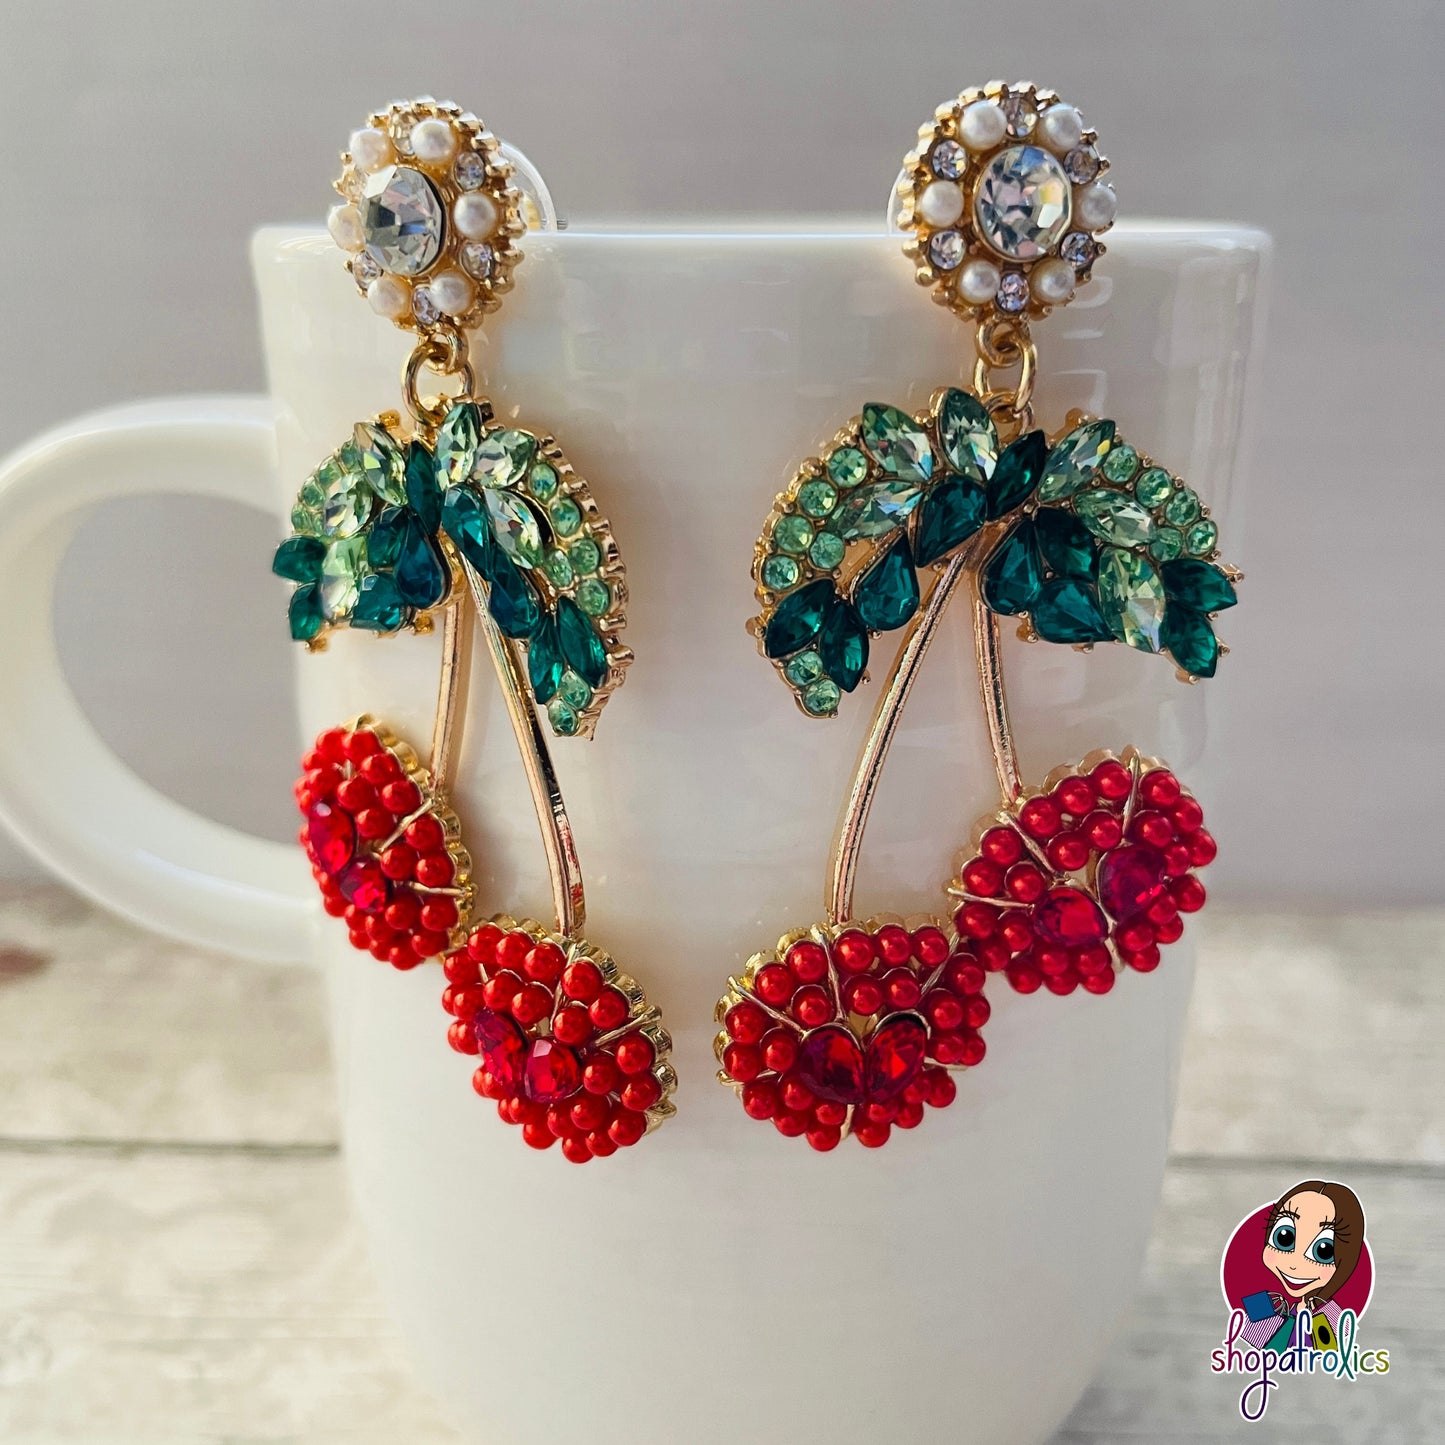 Cherries rockabilly earrings 